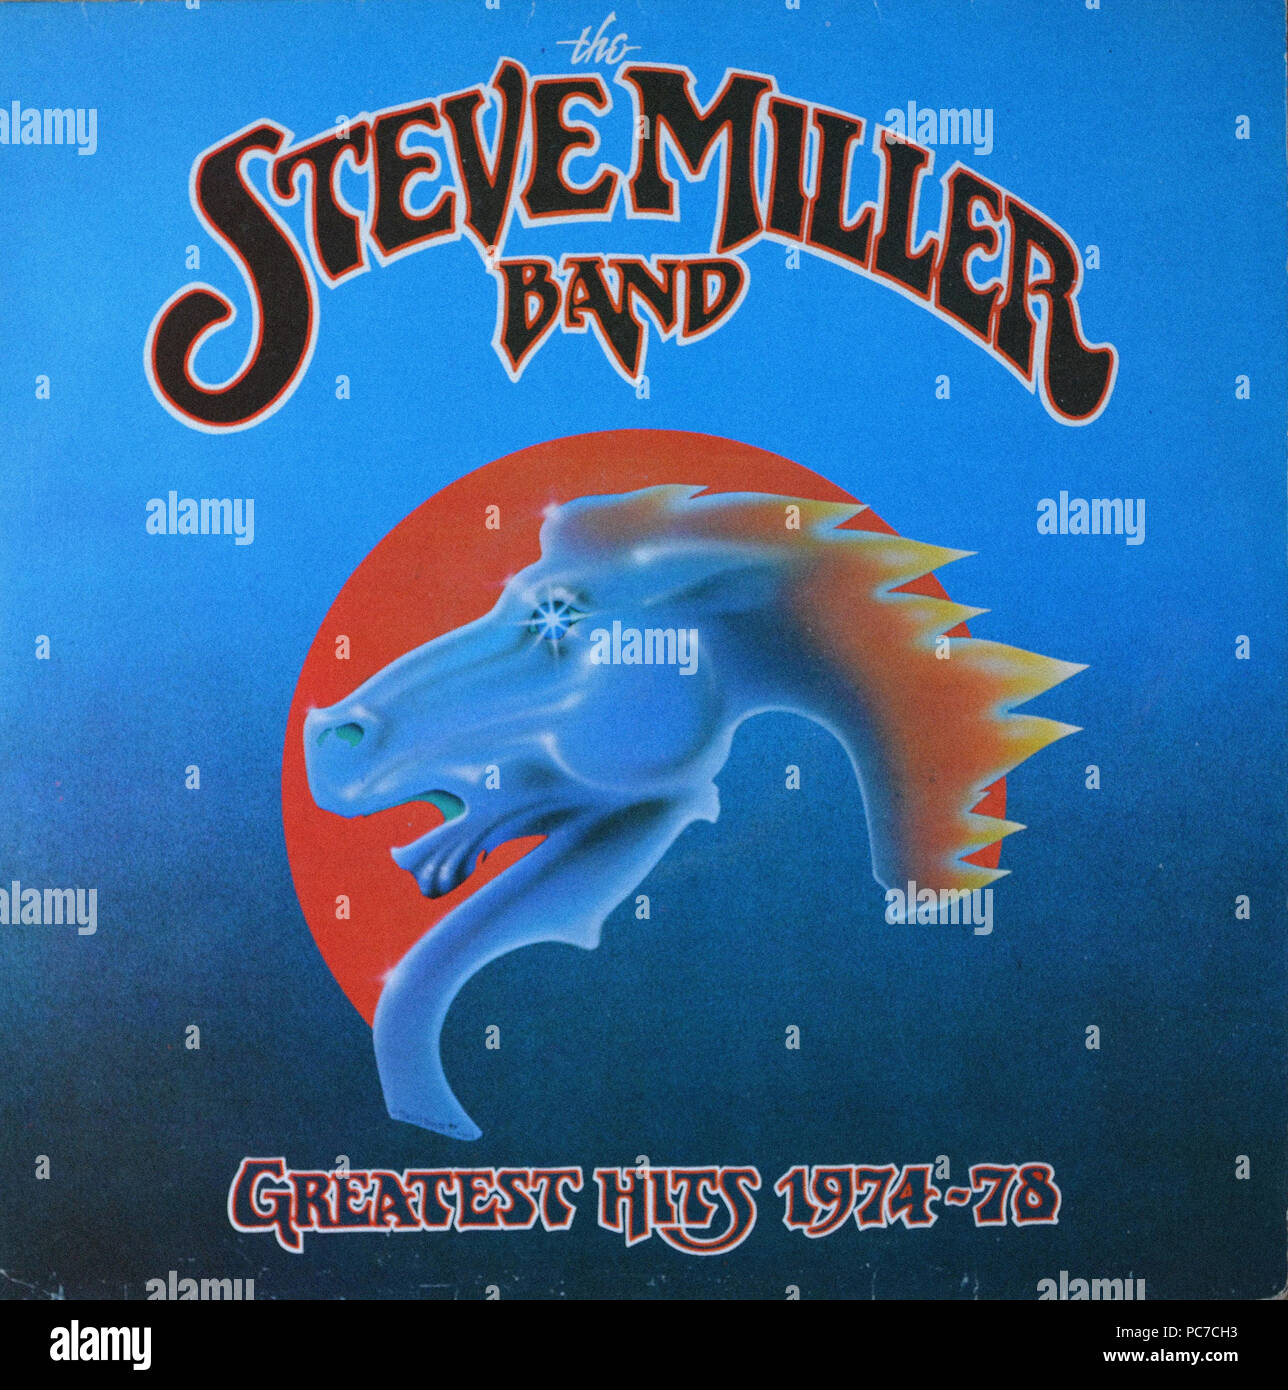 Steve Miller Band   -  Greatest Hits 1974   -  78  -  Vintage vinyl album cover Stock Photo